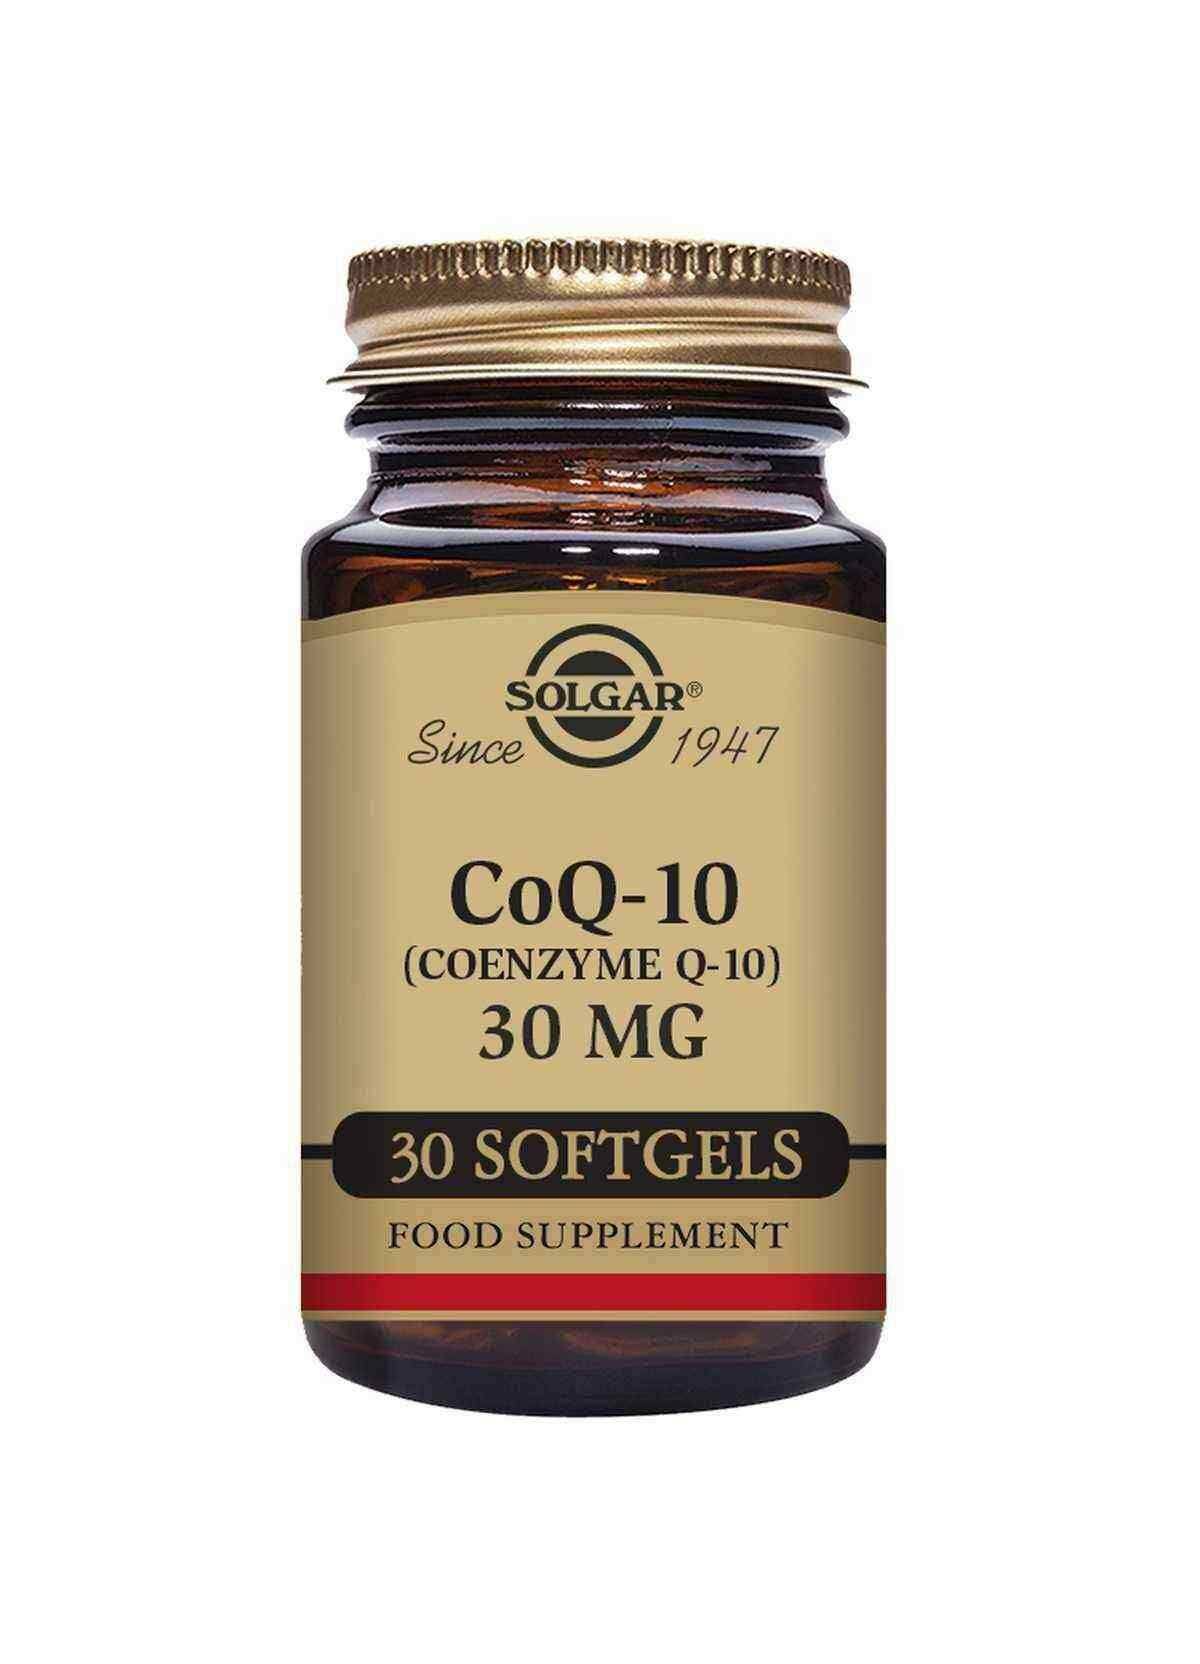 Solgar Megasorb CoQ-10 100mg Dietary Supplement - 30 Softgels